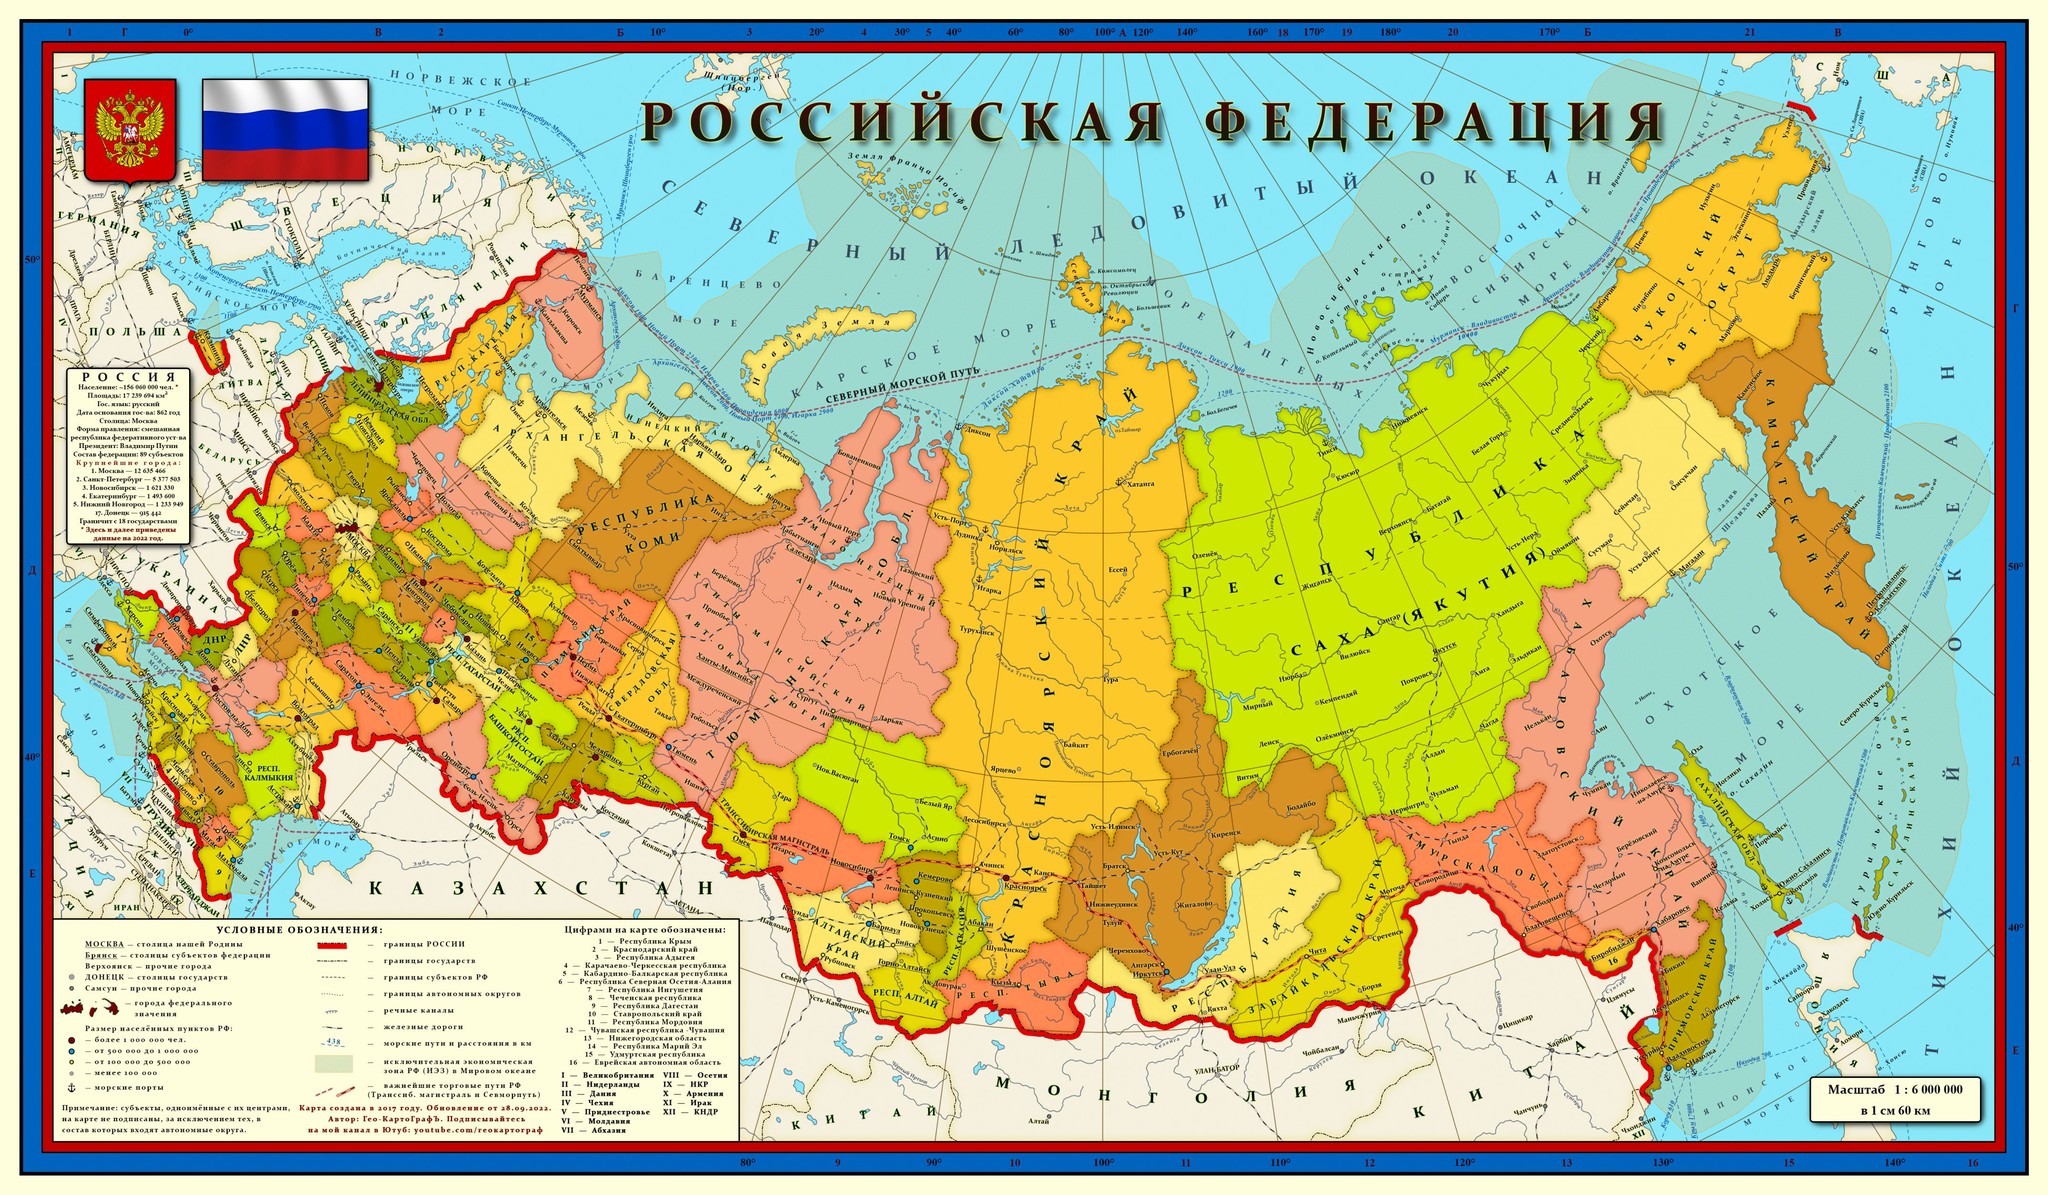 Границы субъектов украины